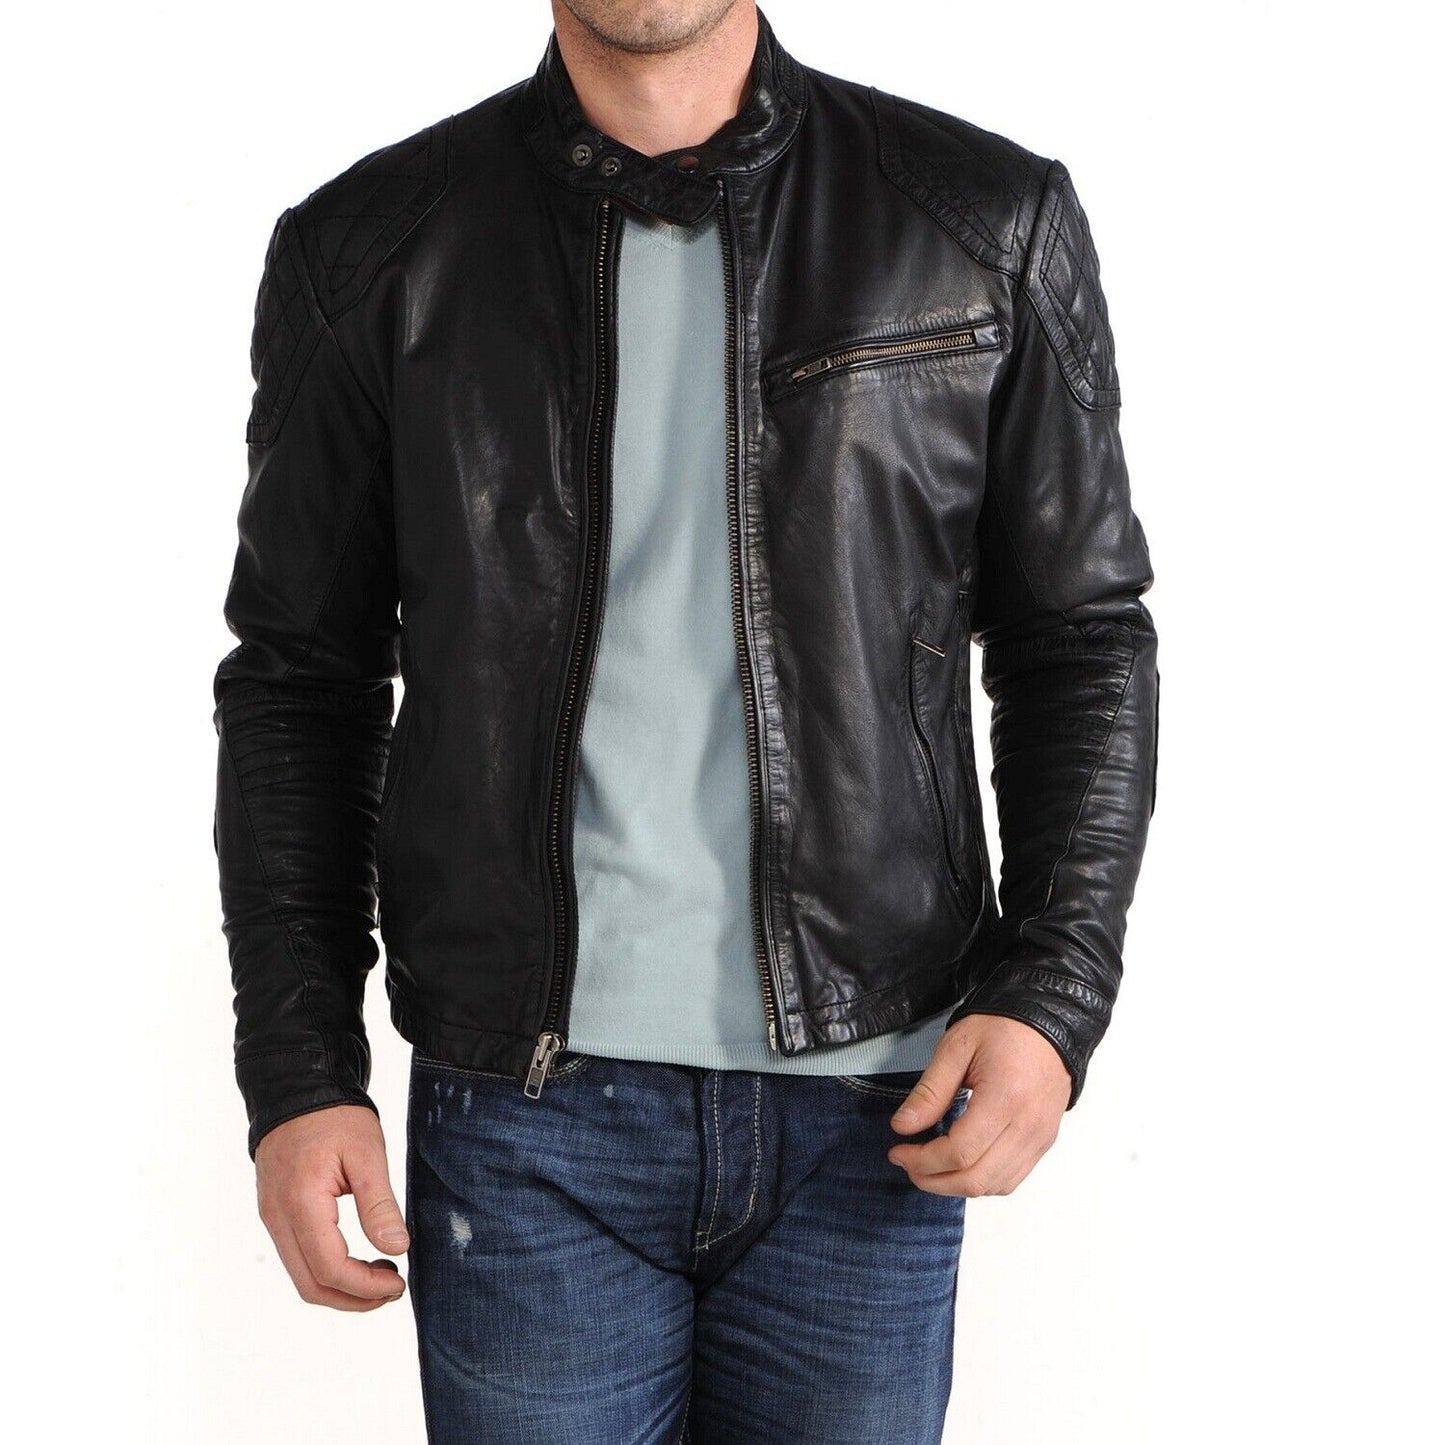 Black Biker Genuine Leather Jacket Soft